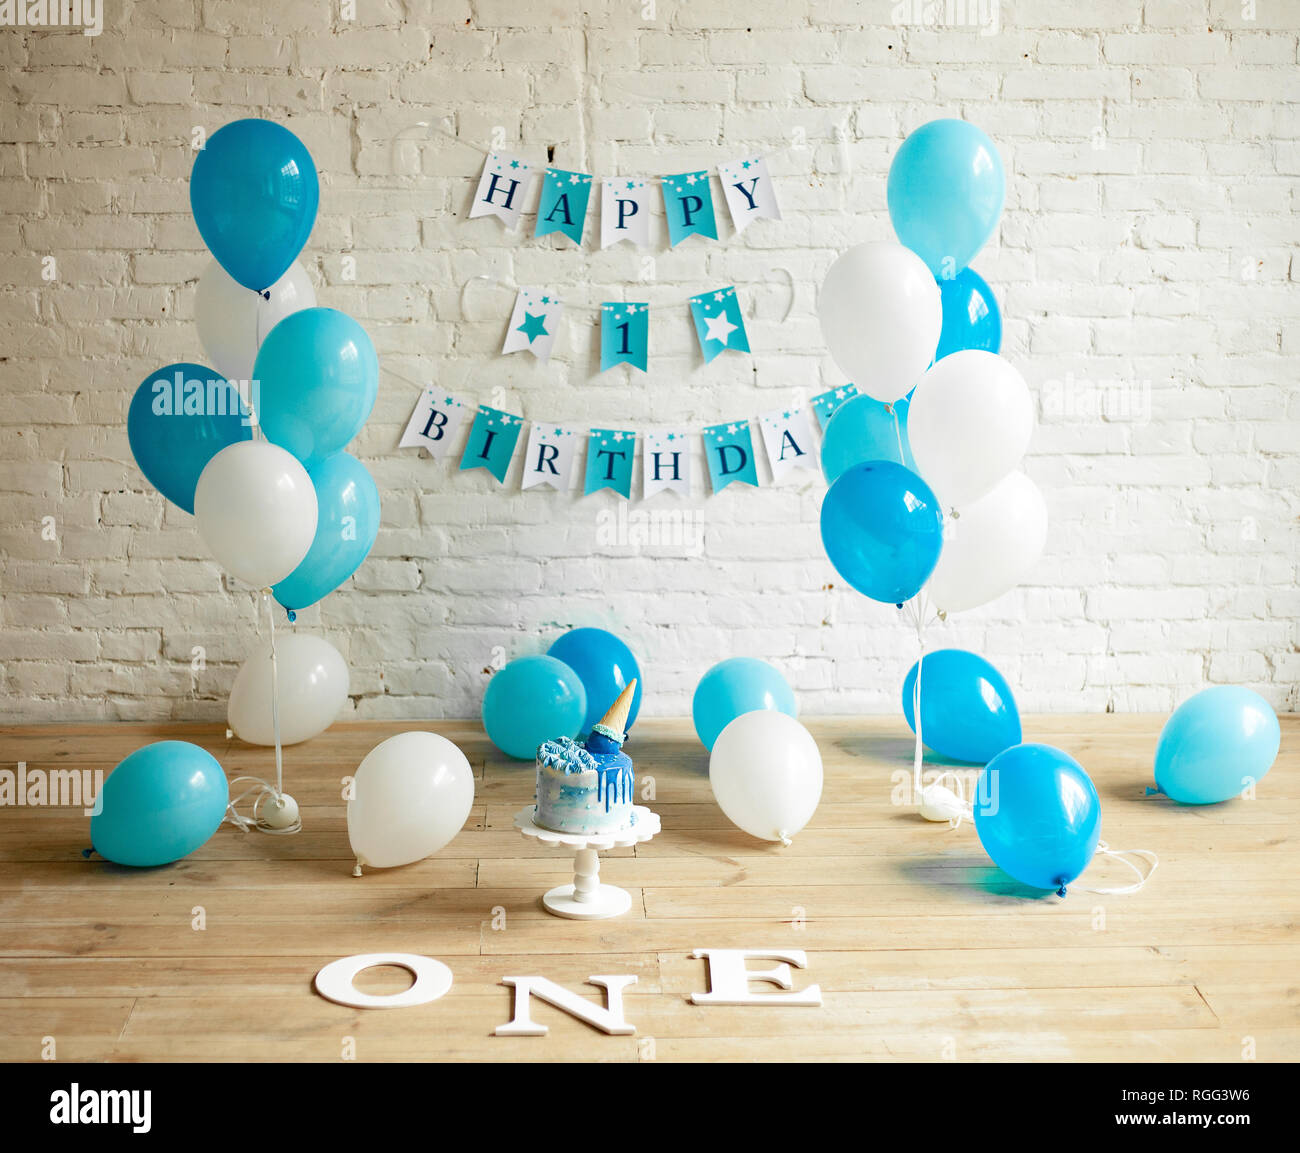 Decoraciones para cumpleaños de un año con un montón de globos blancos y  azules, Torta Festiva e inscripciones en la pared y el piso Fotografía de  stock - Alamy